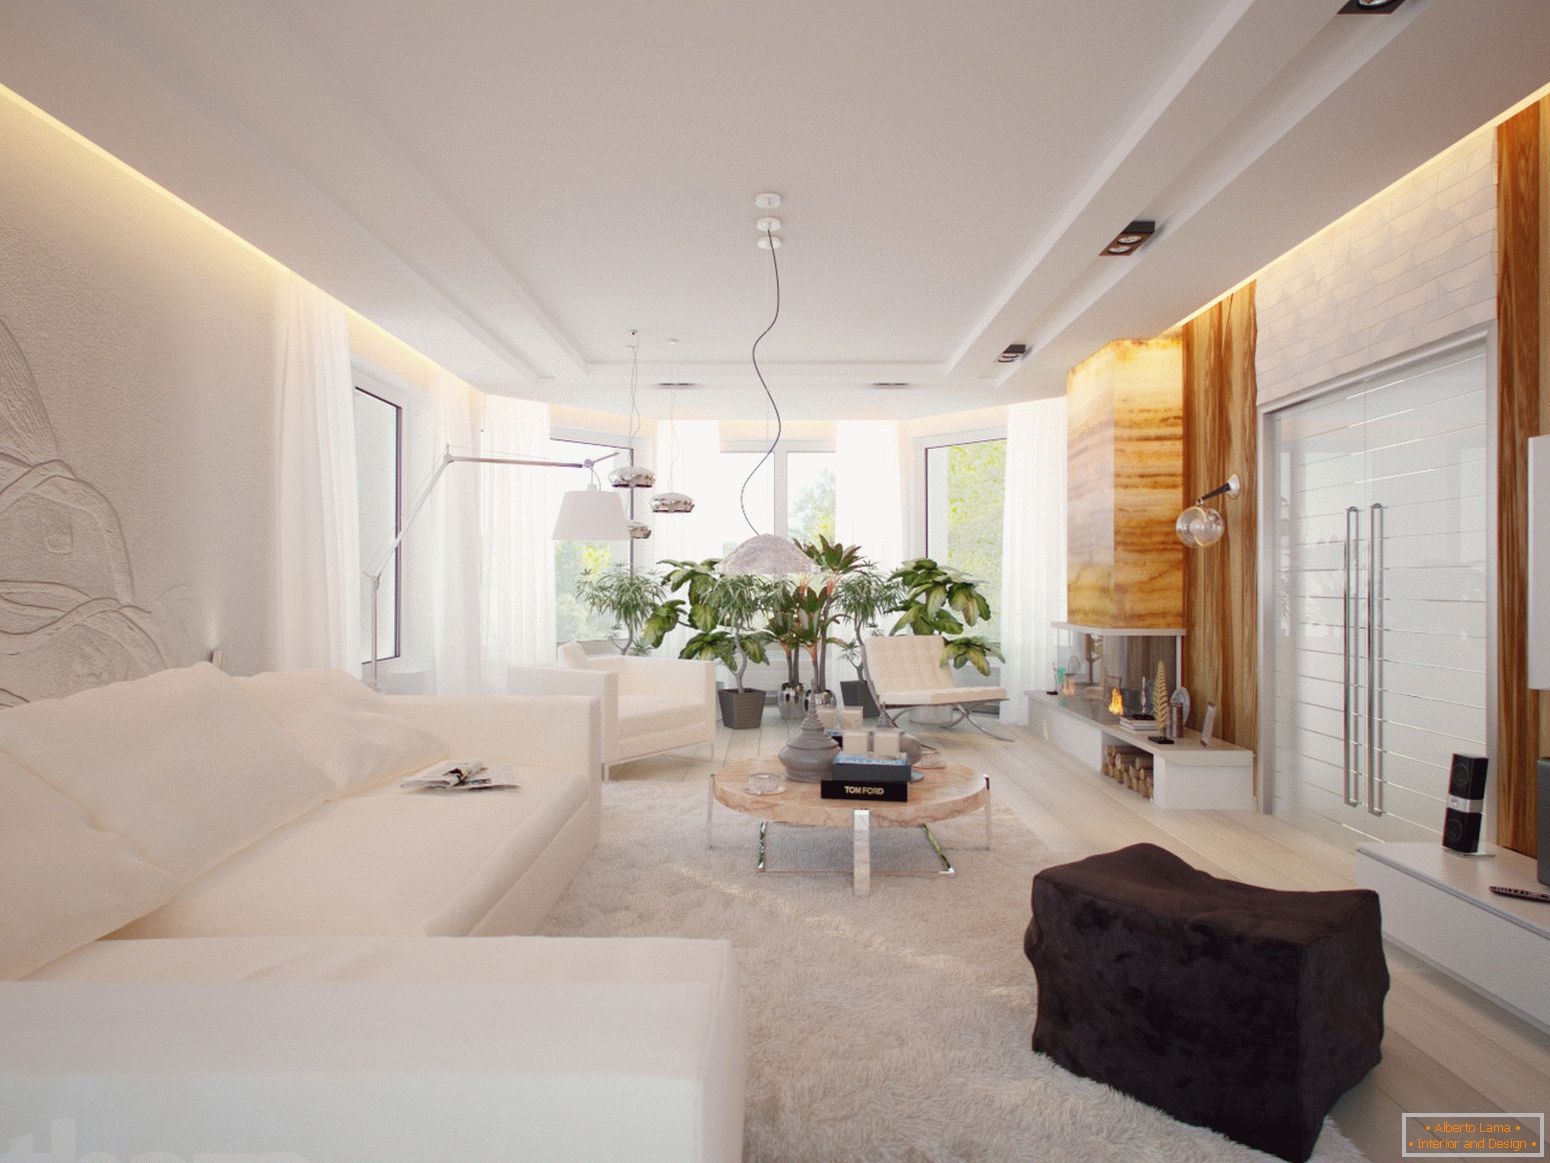 Une chambre spacieuse et lumineuse dans un style minimaliste est un excellent exemple de mobilier bien choisi.